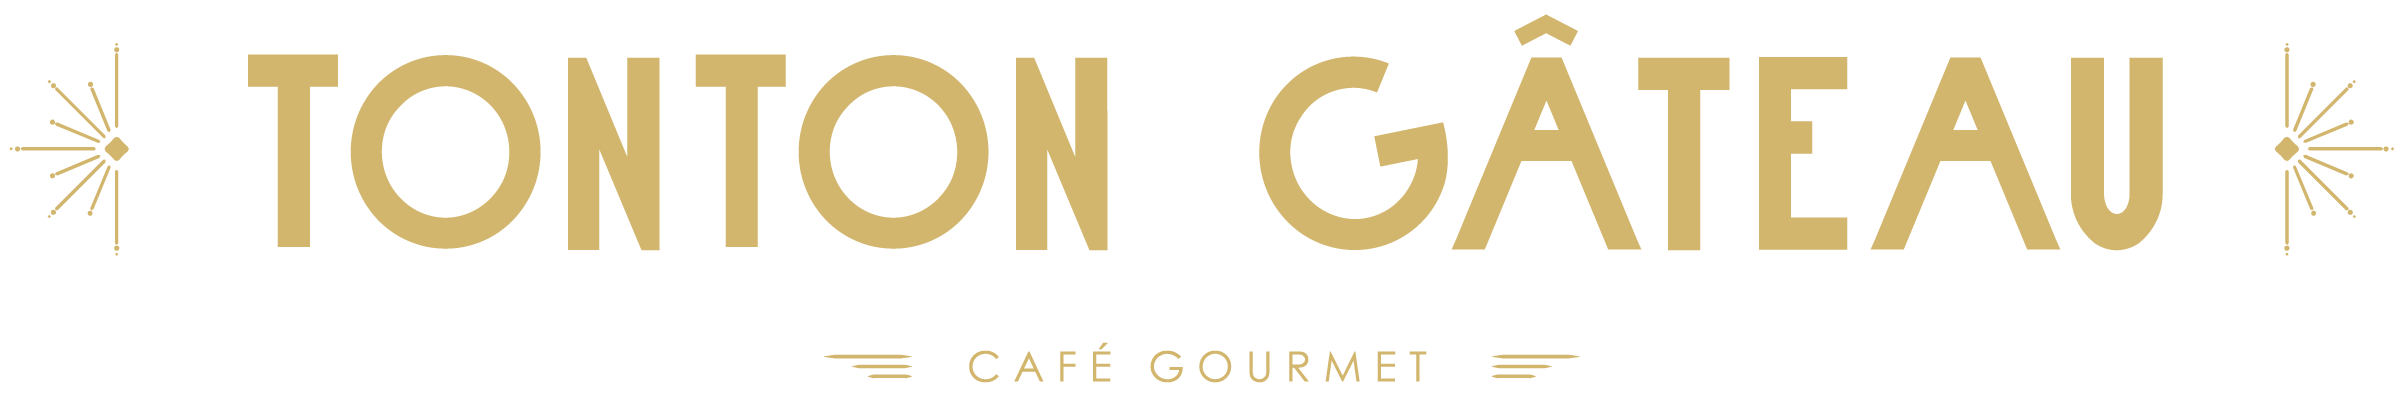 Tonton Gâteau – Café Gourmet